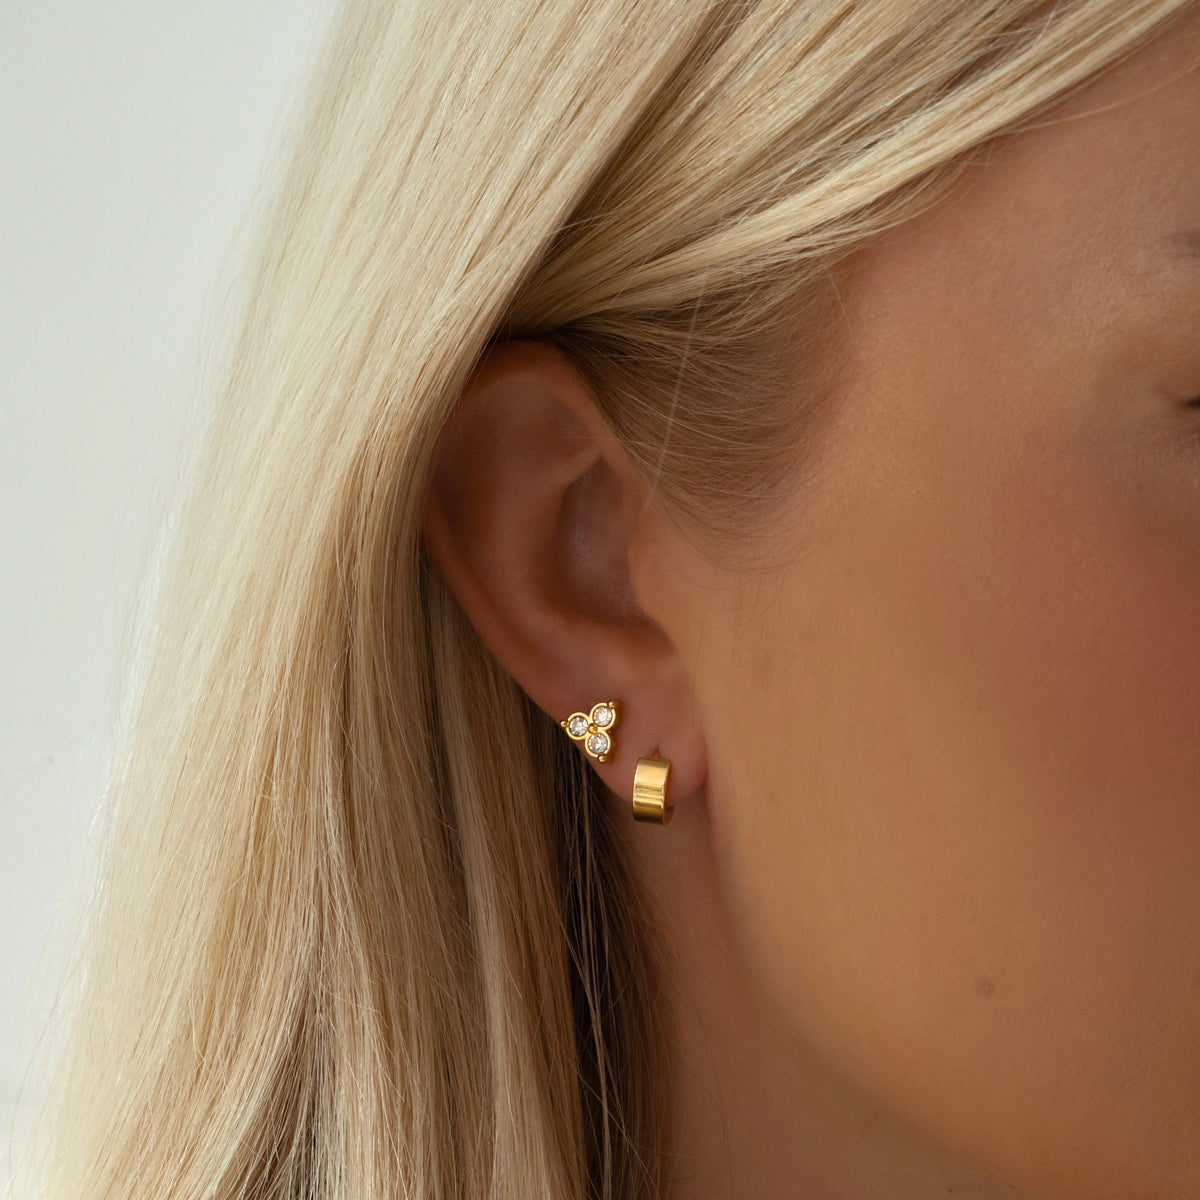 BohoMoon Stainless Steel Define Stud Earrings Gold